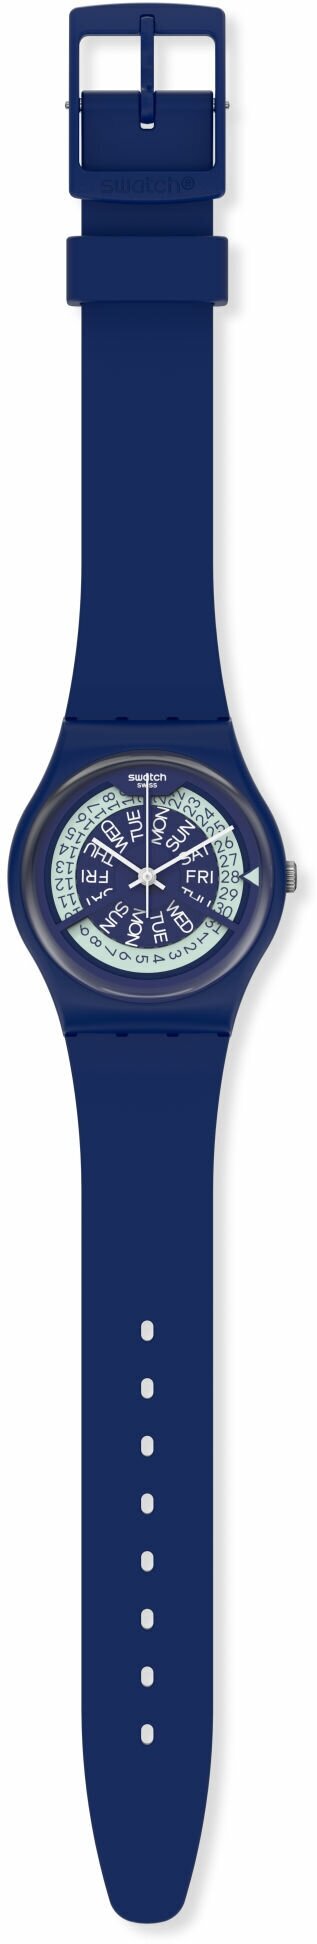 Наручные часы swatch, синий